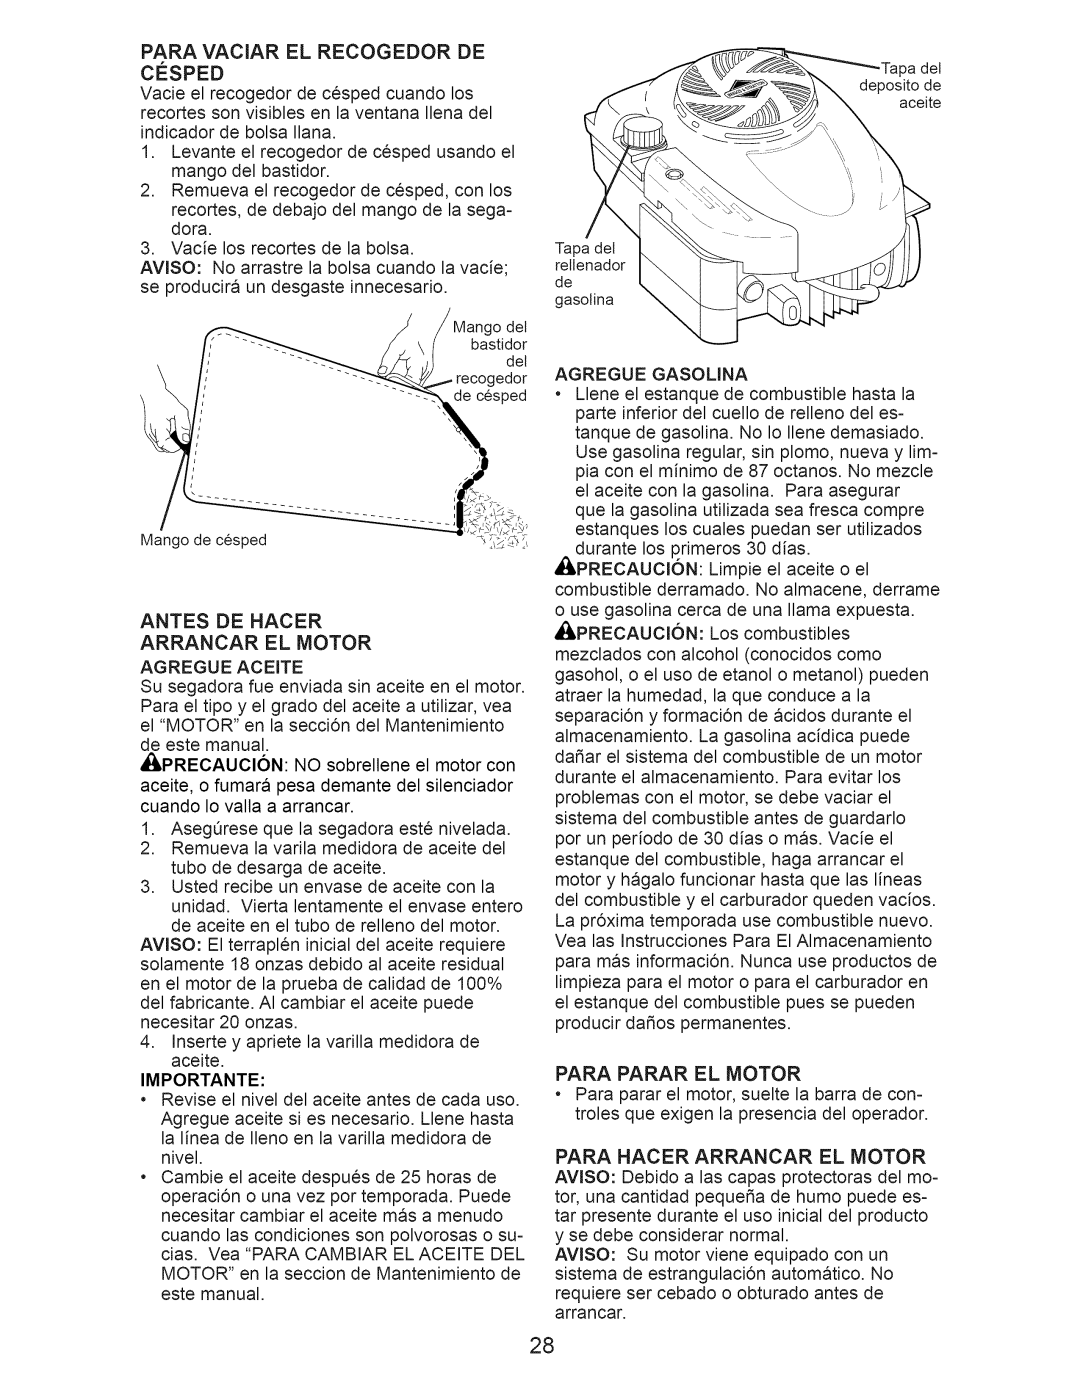 Craftsman 917.374354 owner manual Antes De Hacer Arrancar El Motor, Importante, Para Parar El Motor 